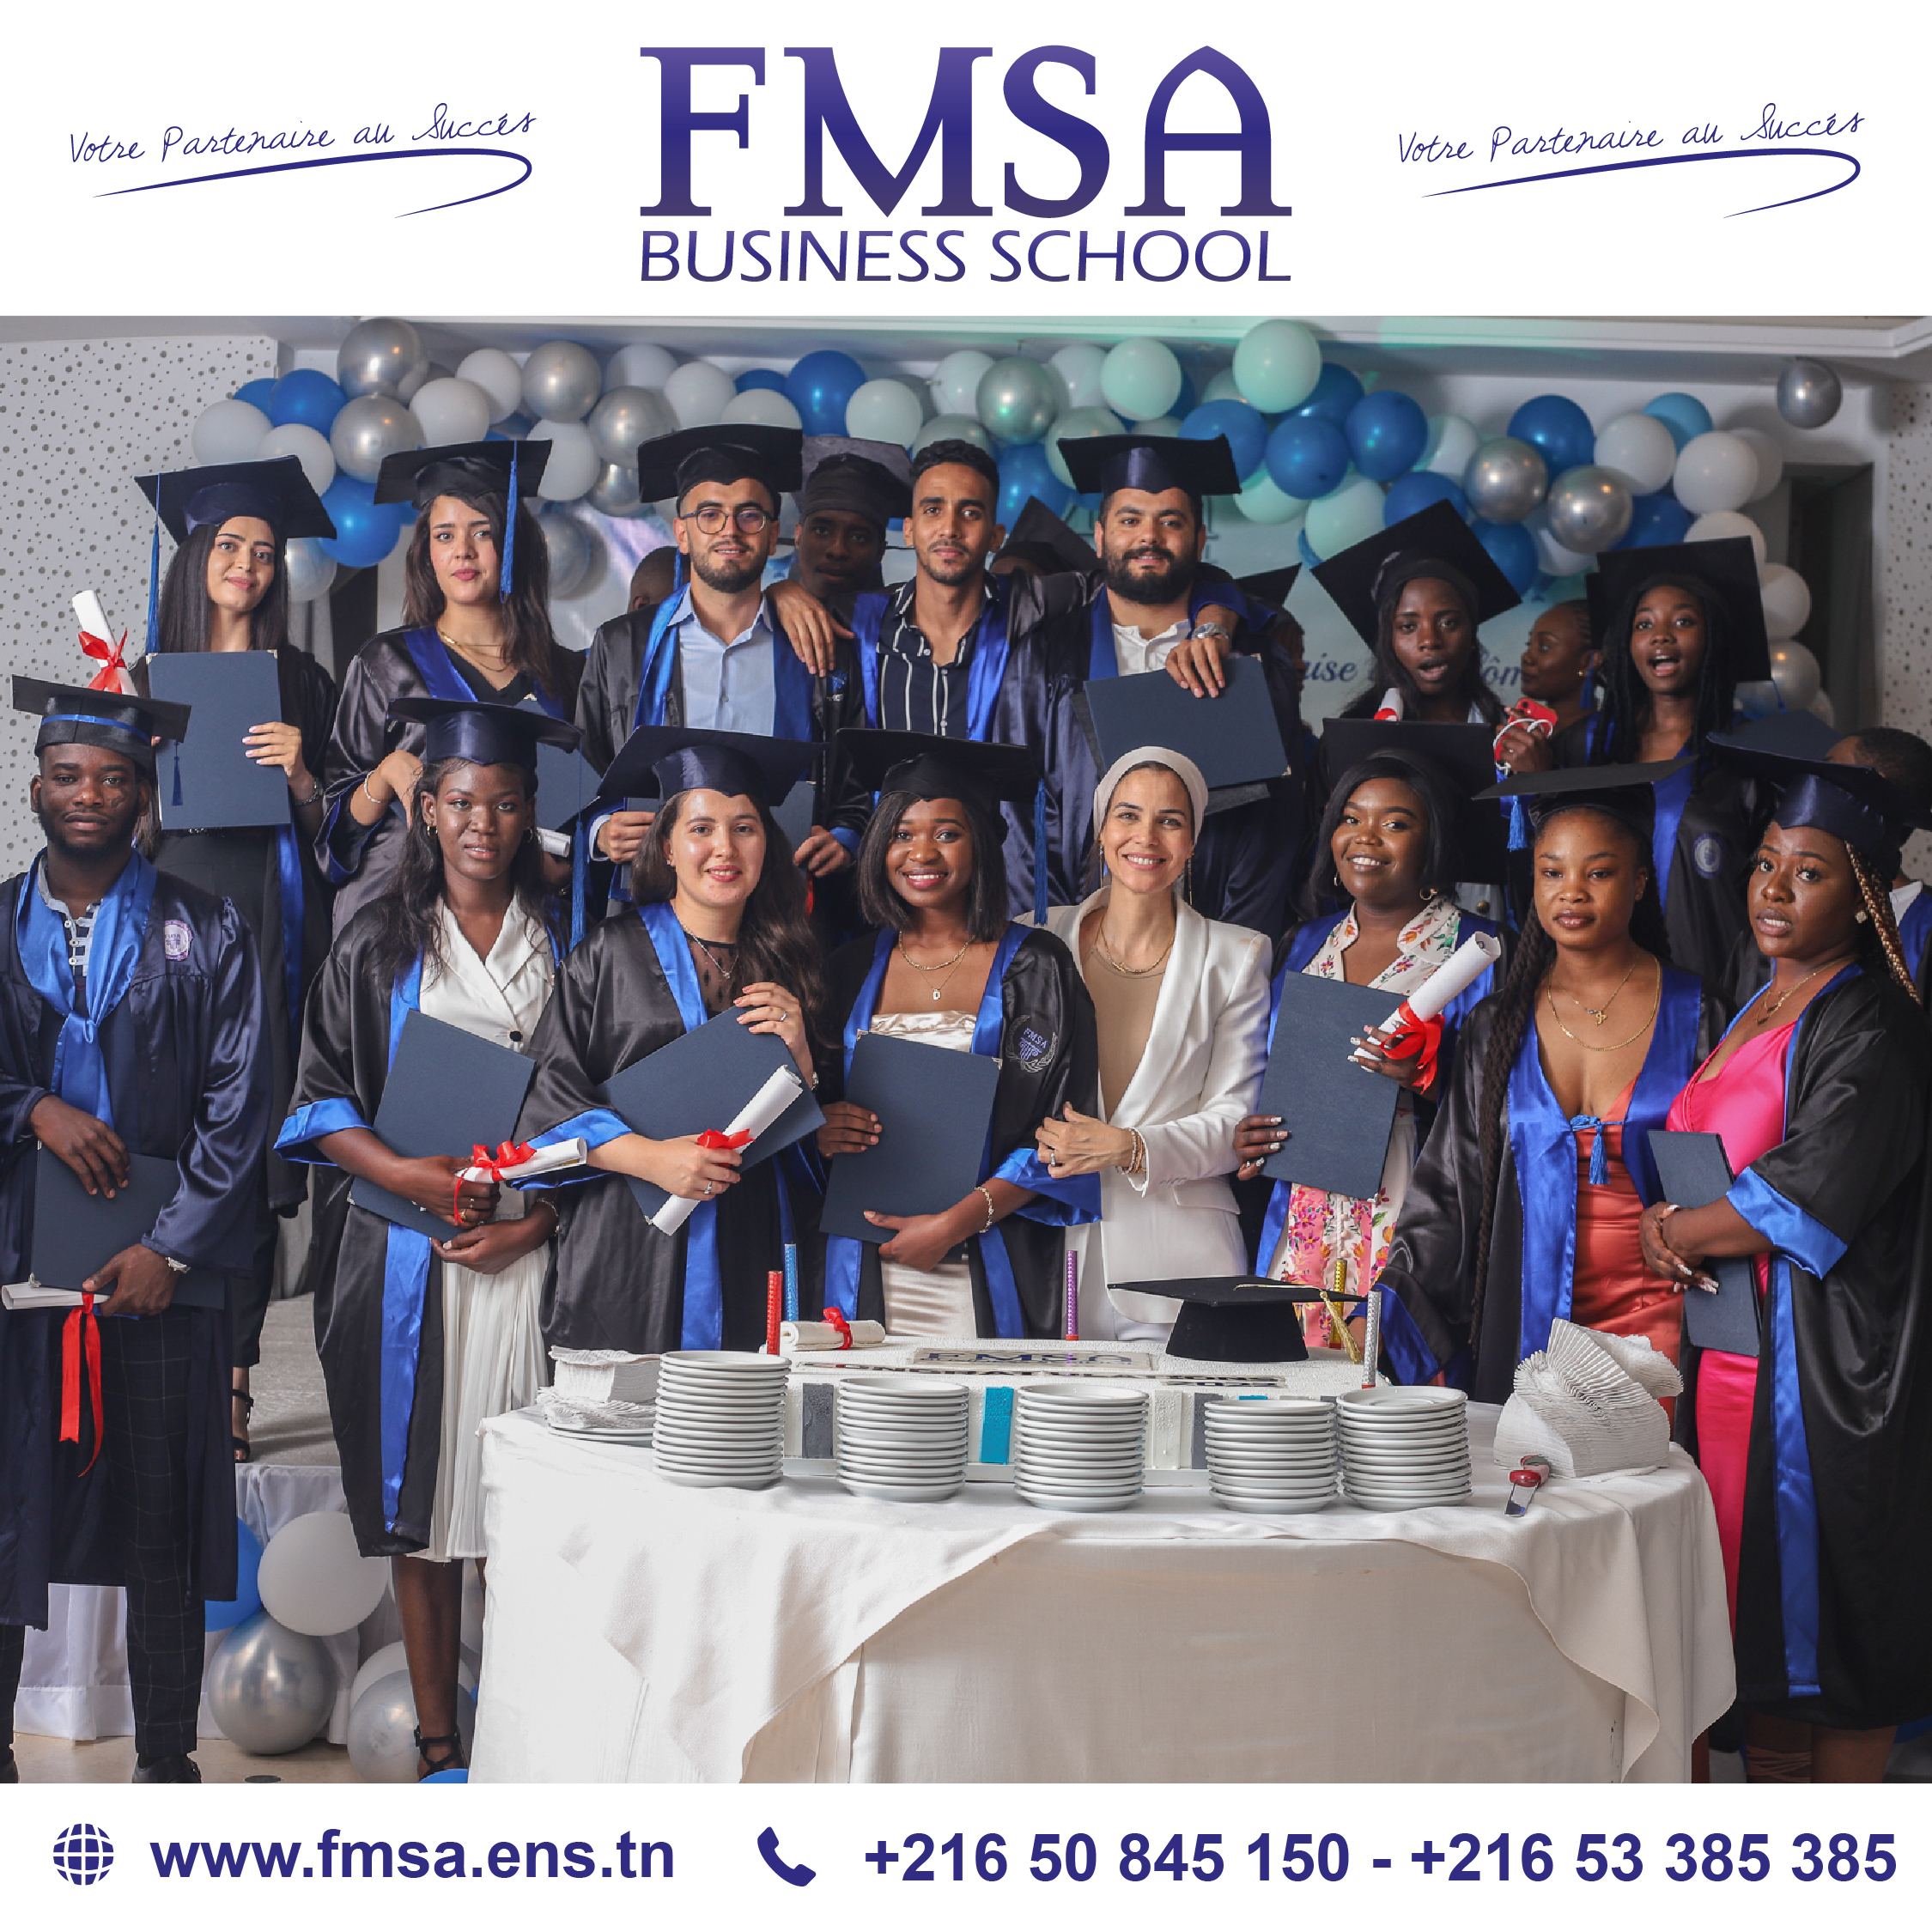 Fête de remise des diplômes de la FMSA